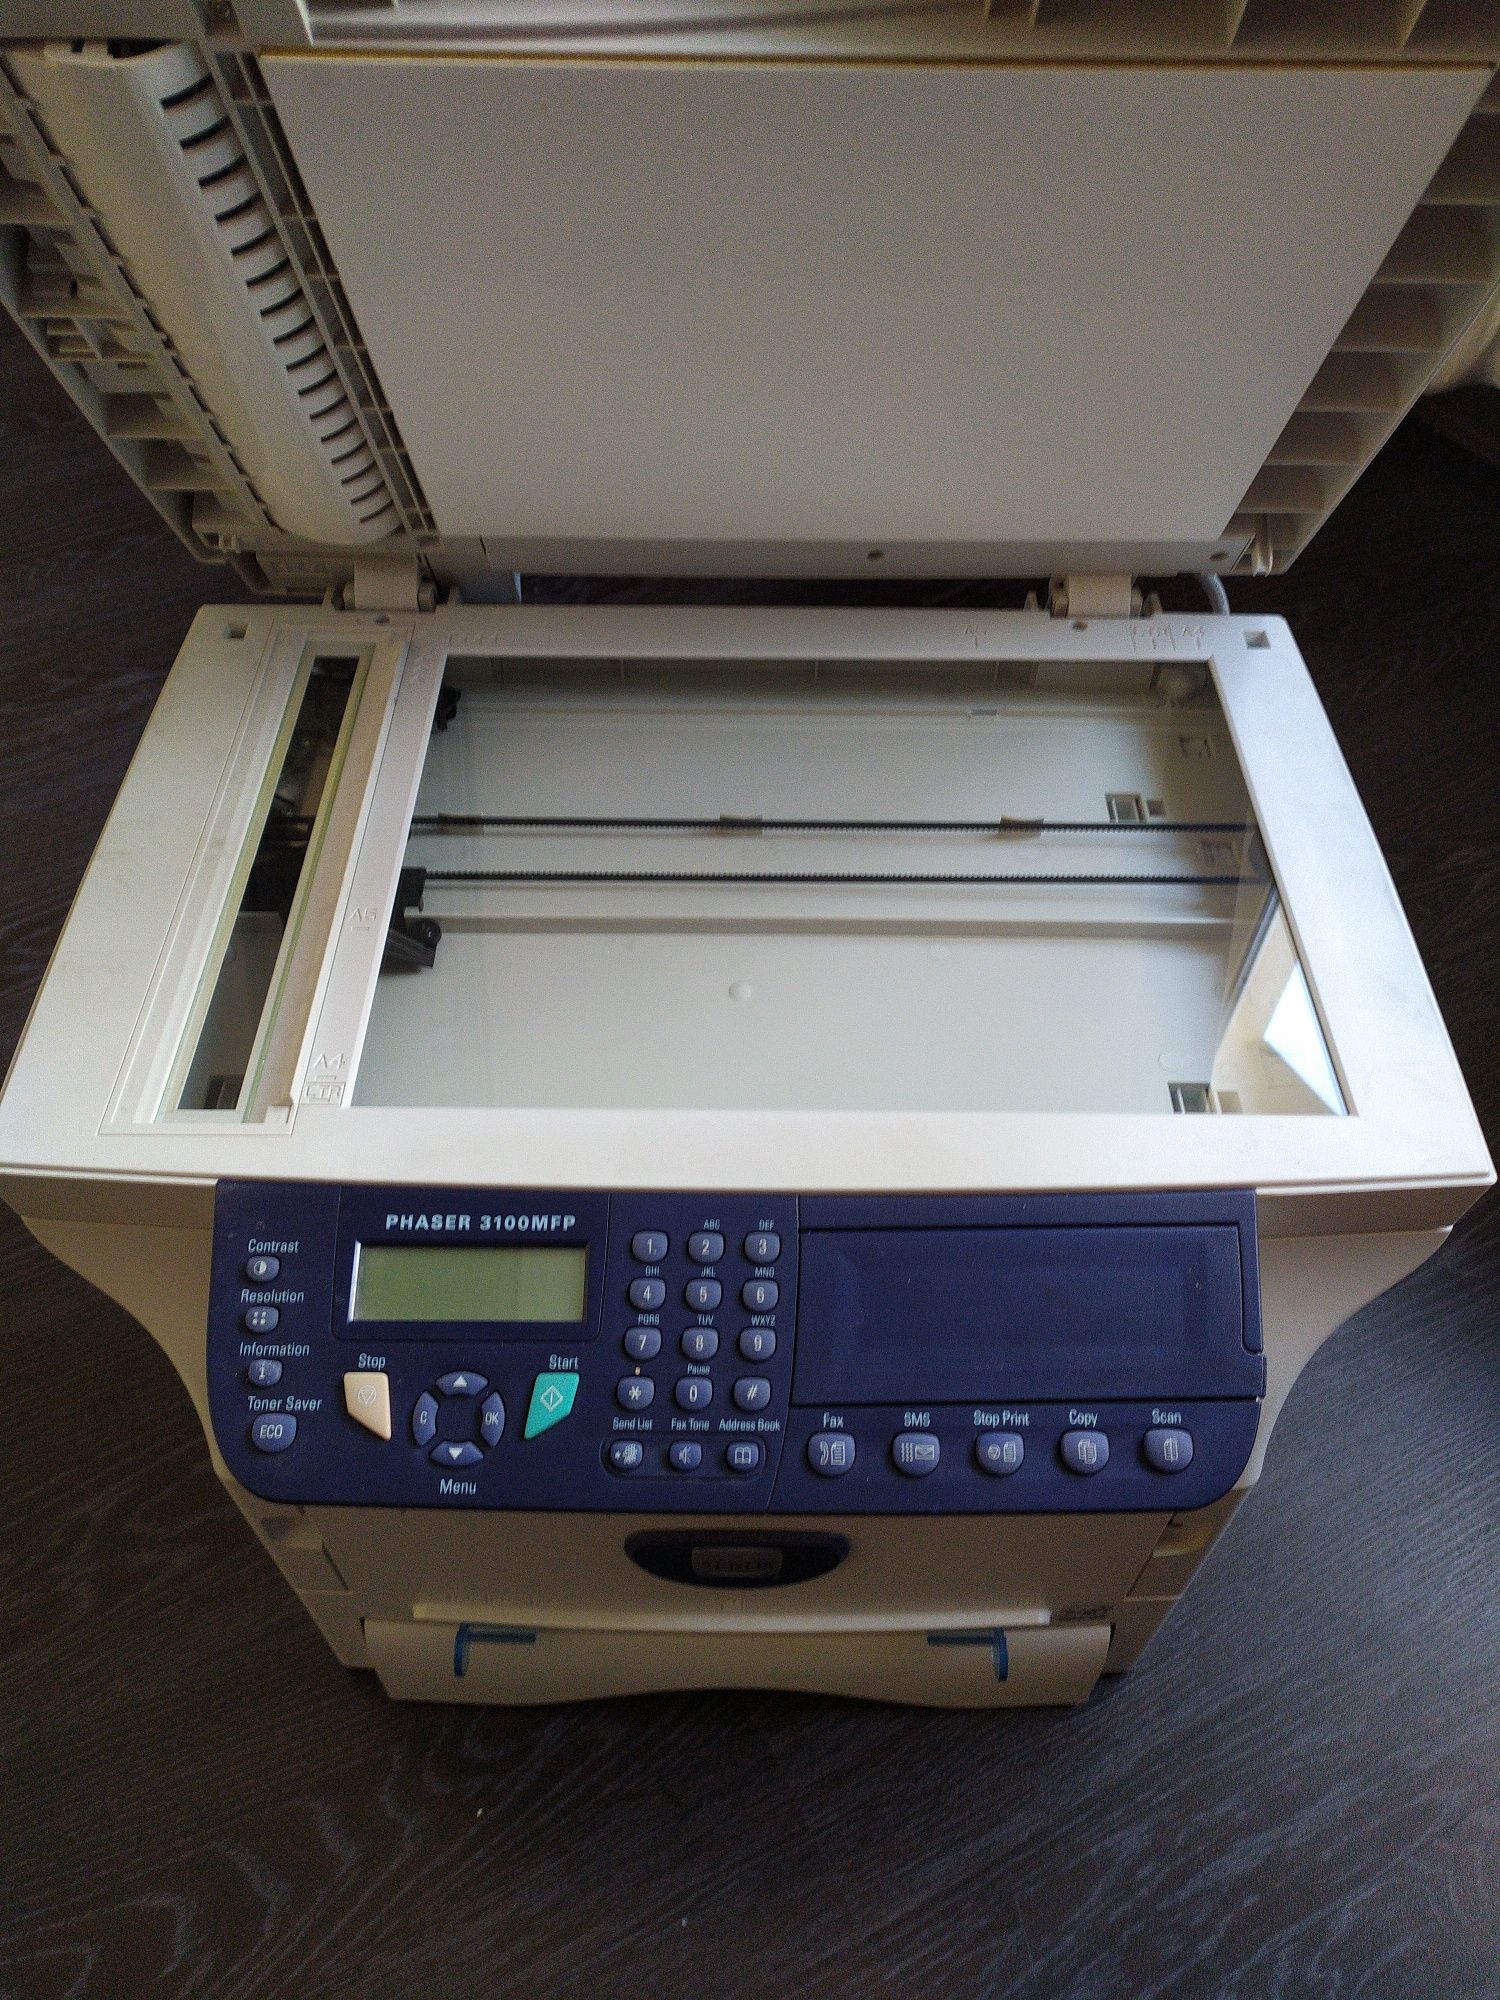 Принтер,ксерокс, сканер Xerox Phaser 3100